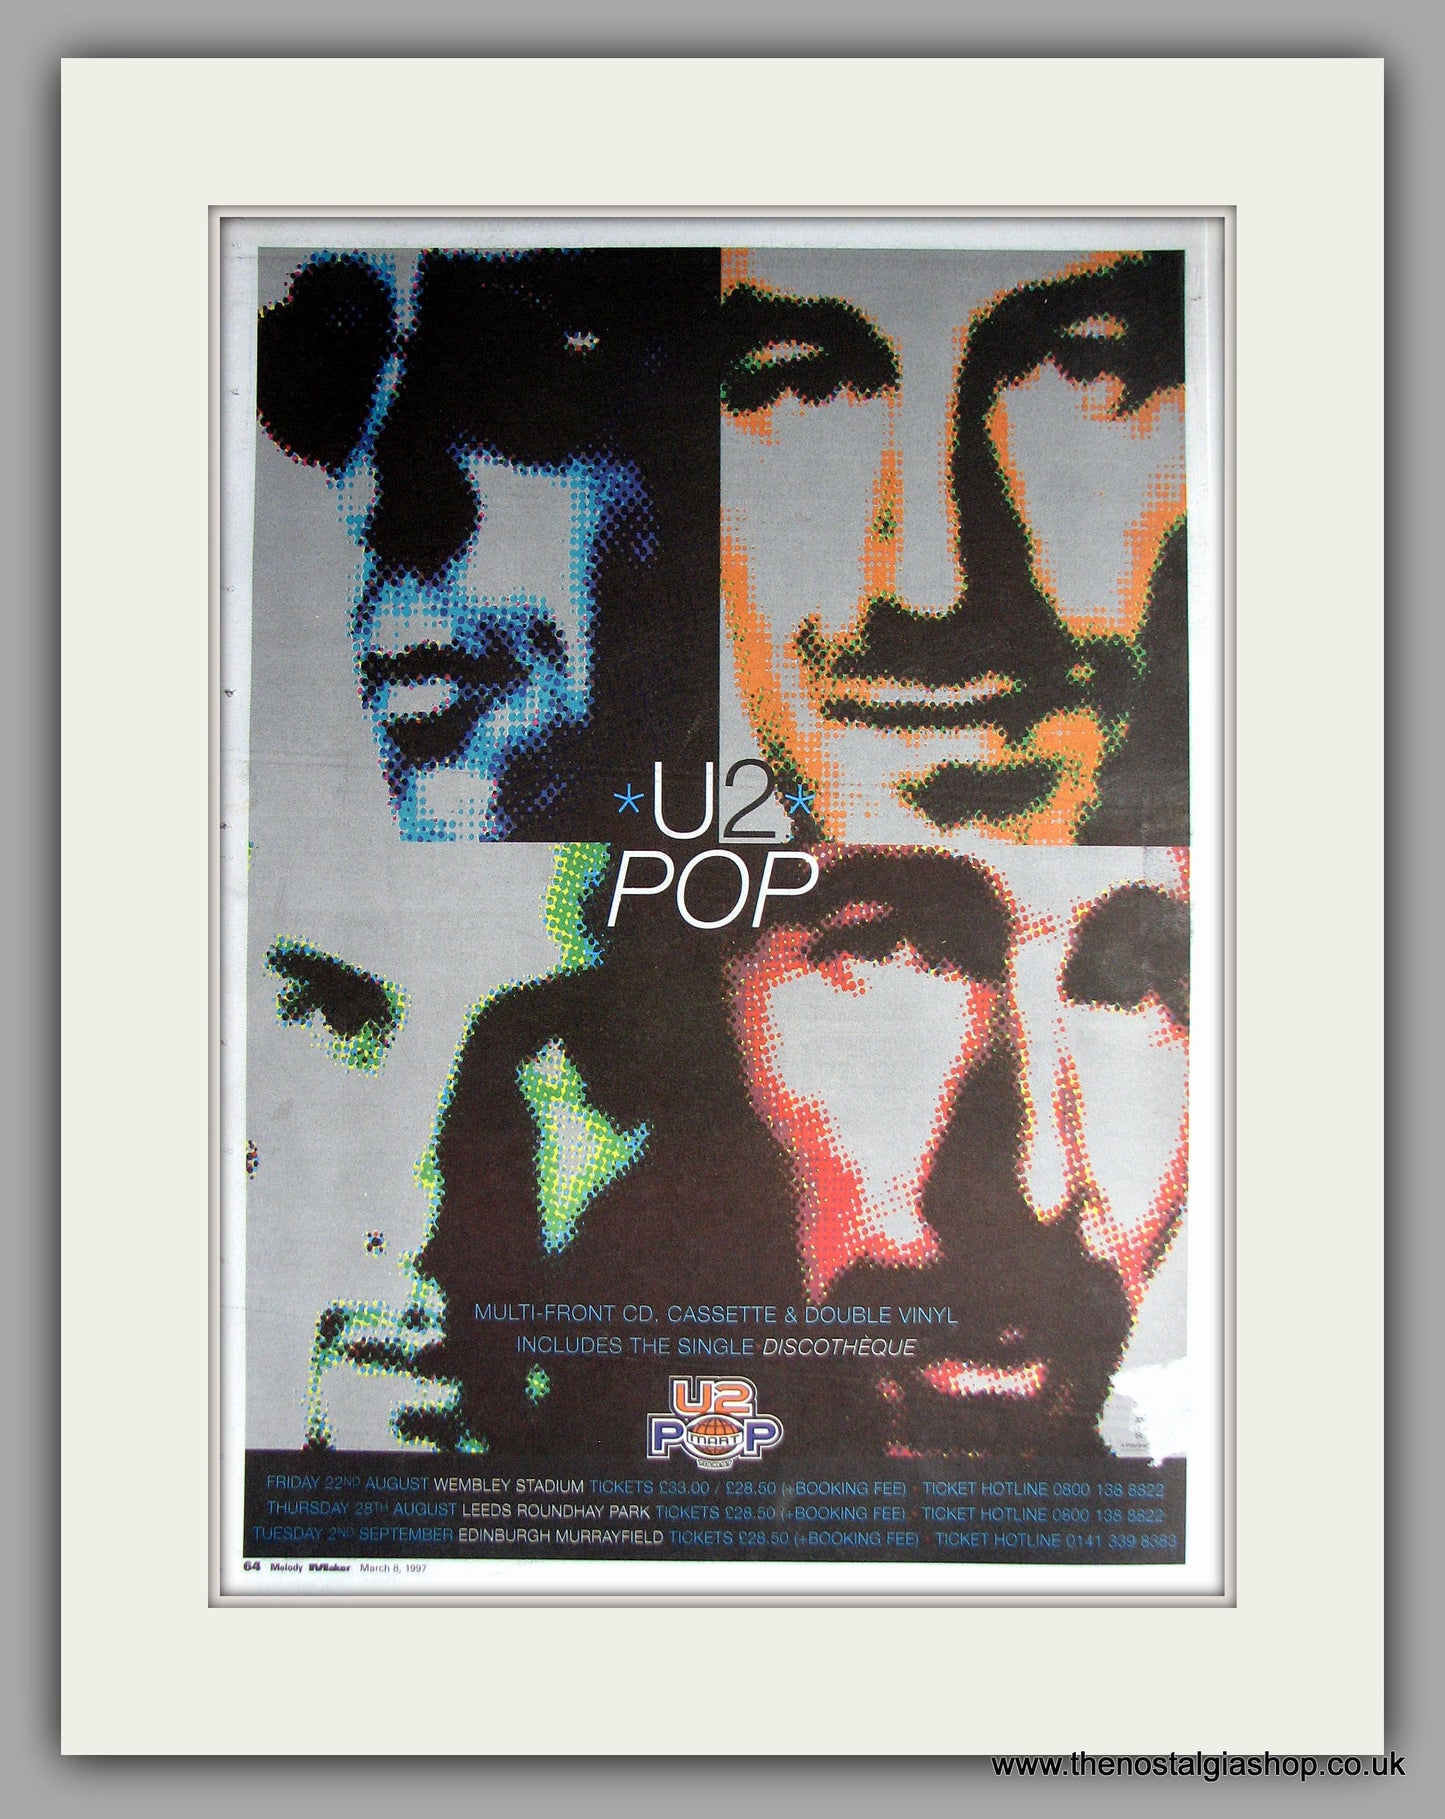 U2 - Pop. Original Vintage Advert 1997  (ref AD11159)